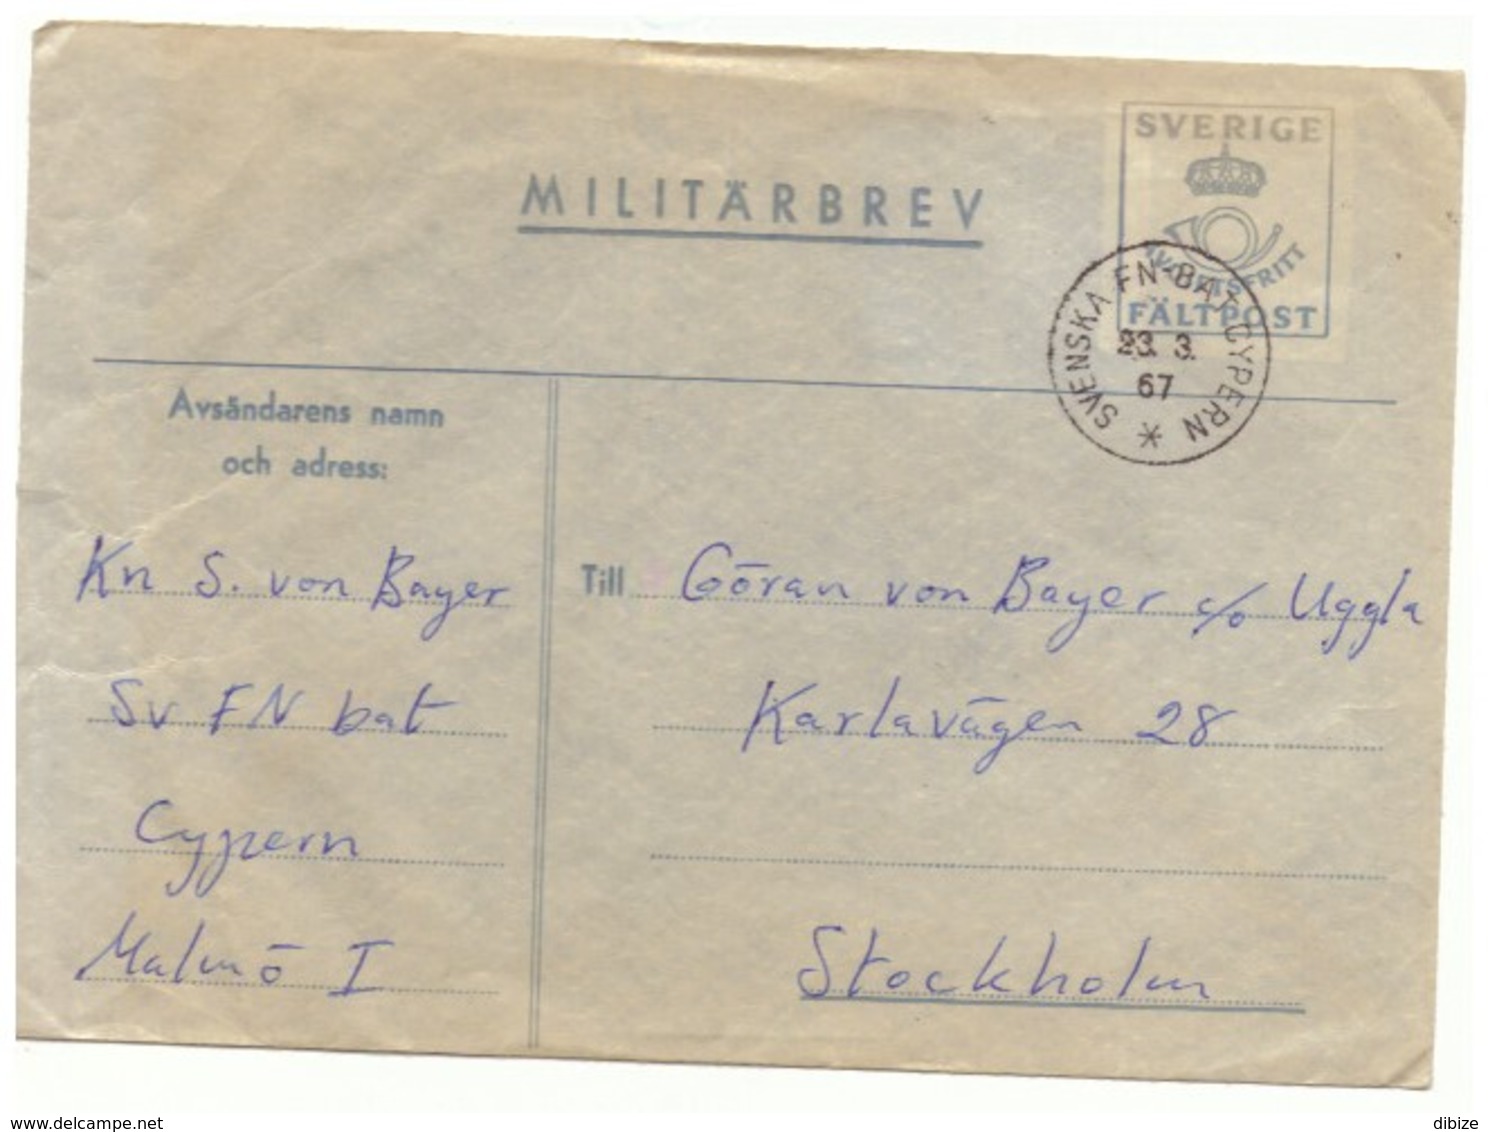 Enveloppe En Franchise Militaire. Suède. Miltärbrev. Avgiftsfritt.  Fältpost. Sverige. 1962. - Military